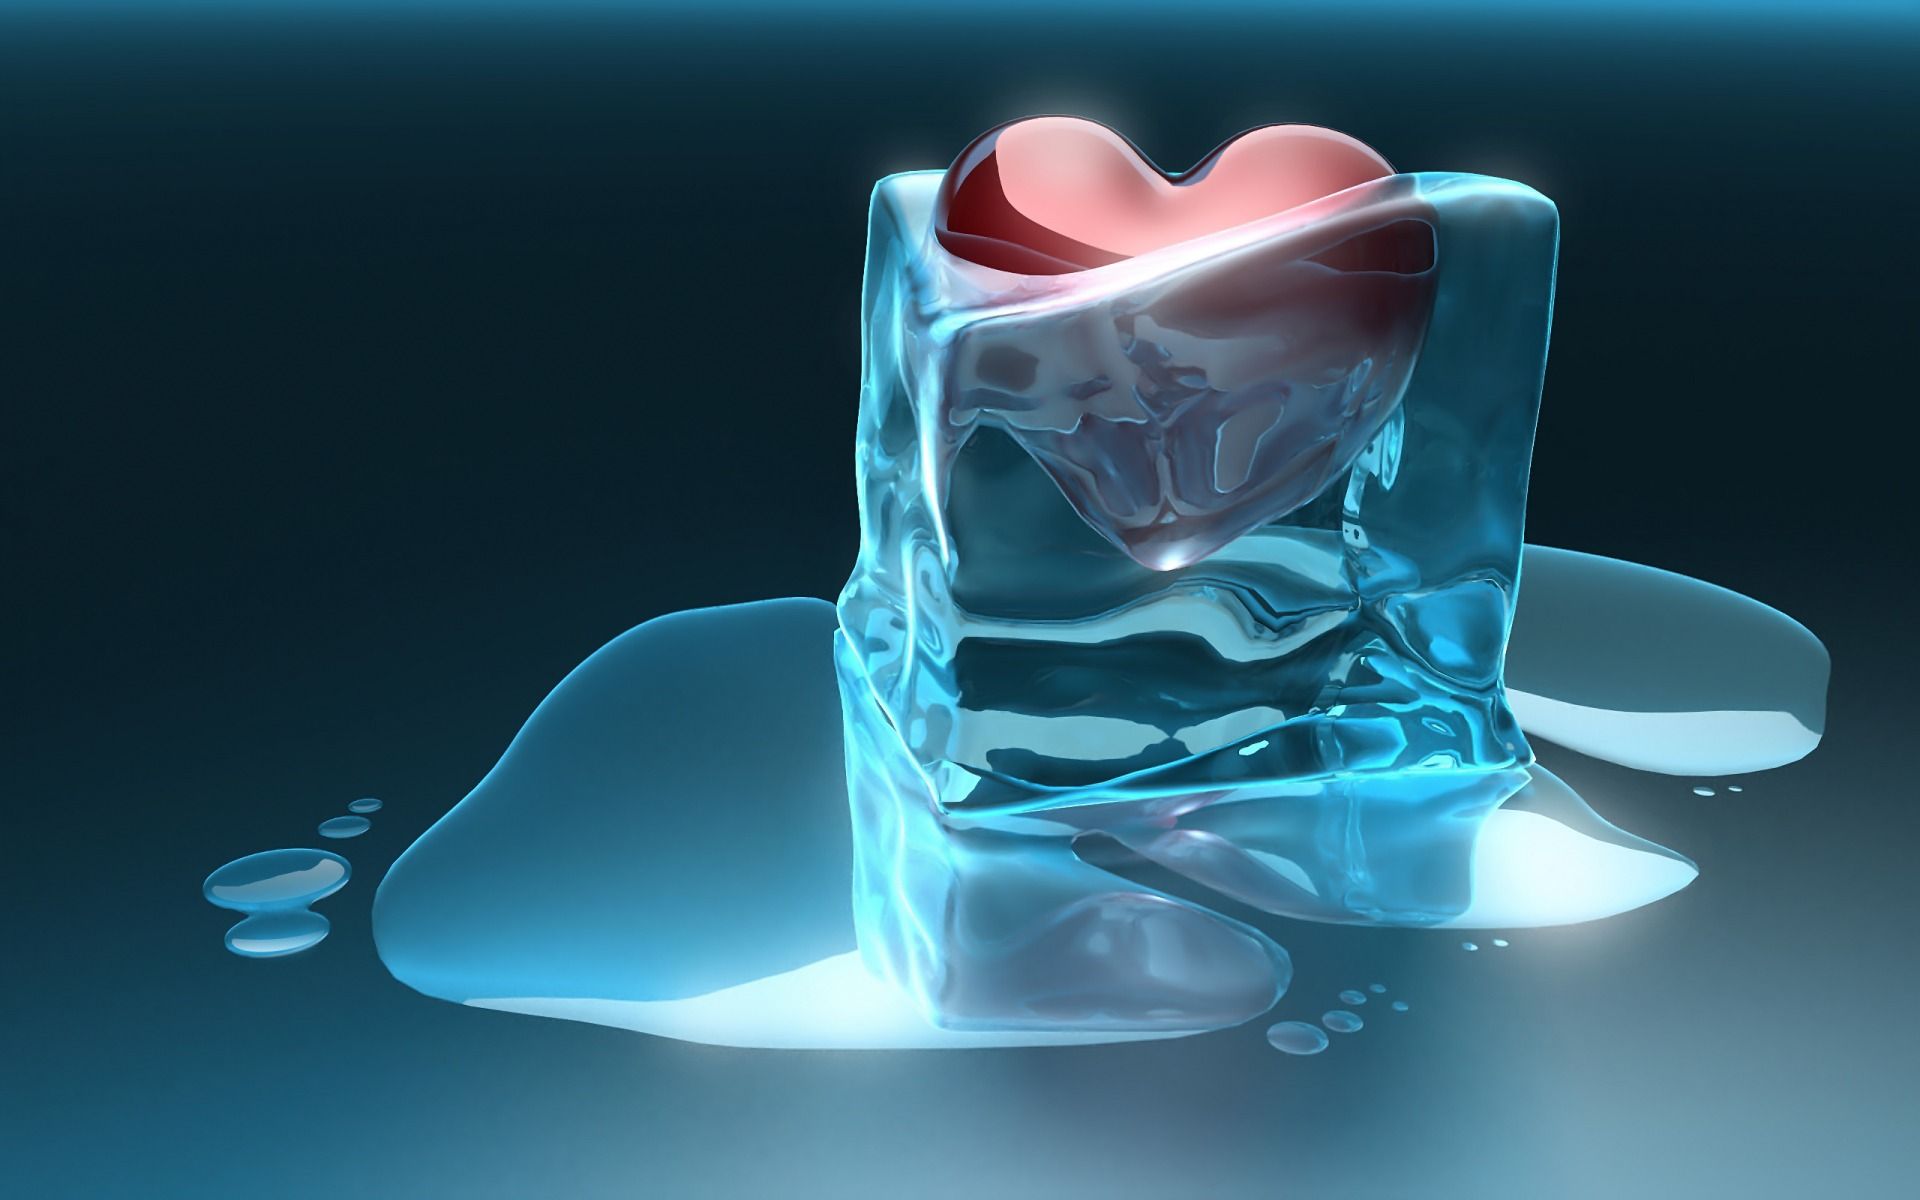 cool frozen heart wallpaper high definition 3D wallpaper for desktop models high definition 3D wallpaper for desktop. Heart wallpaper, Ice heart, Love wallpaper